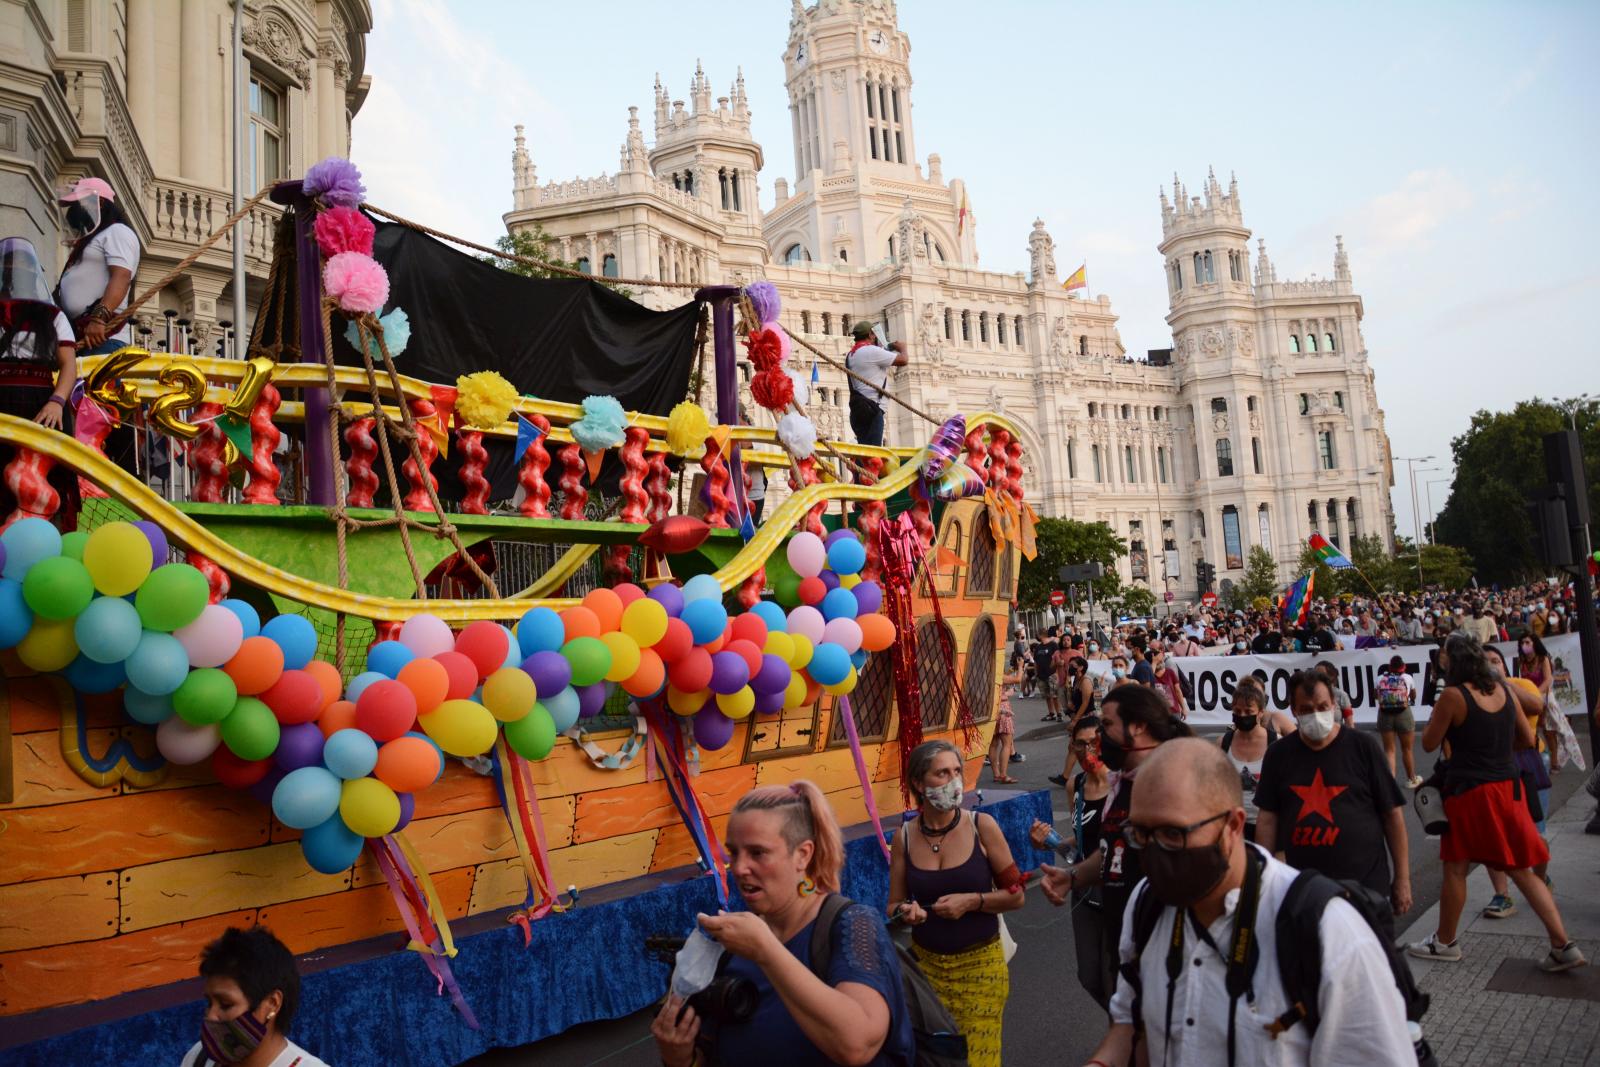 Barco dos zapatistas a desfilar em Madrid